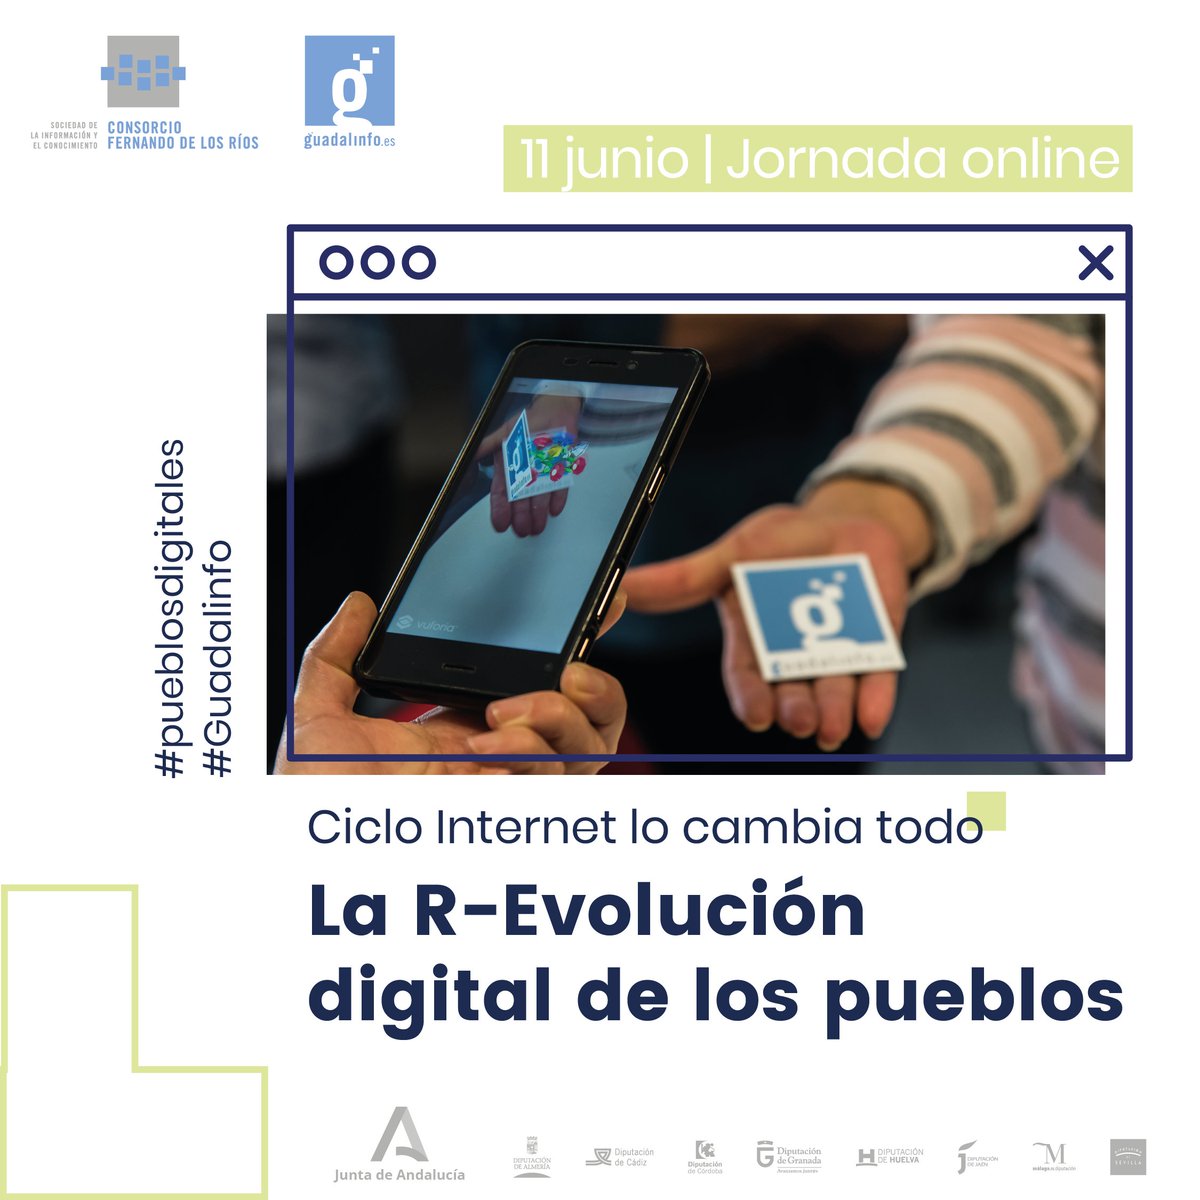 La R-Evolución digital de los pueblos #Pueblosdigitales #Guadalinfo sí somos esenciales @RedGuadalinfo